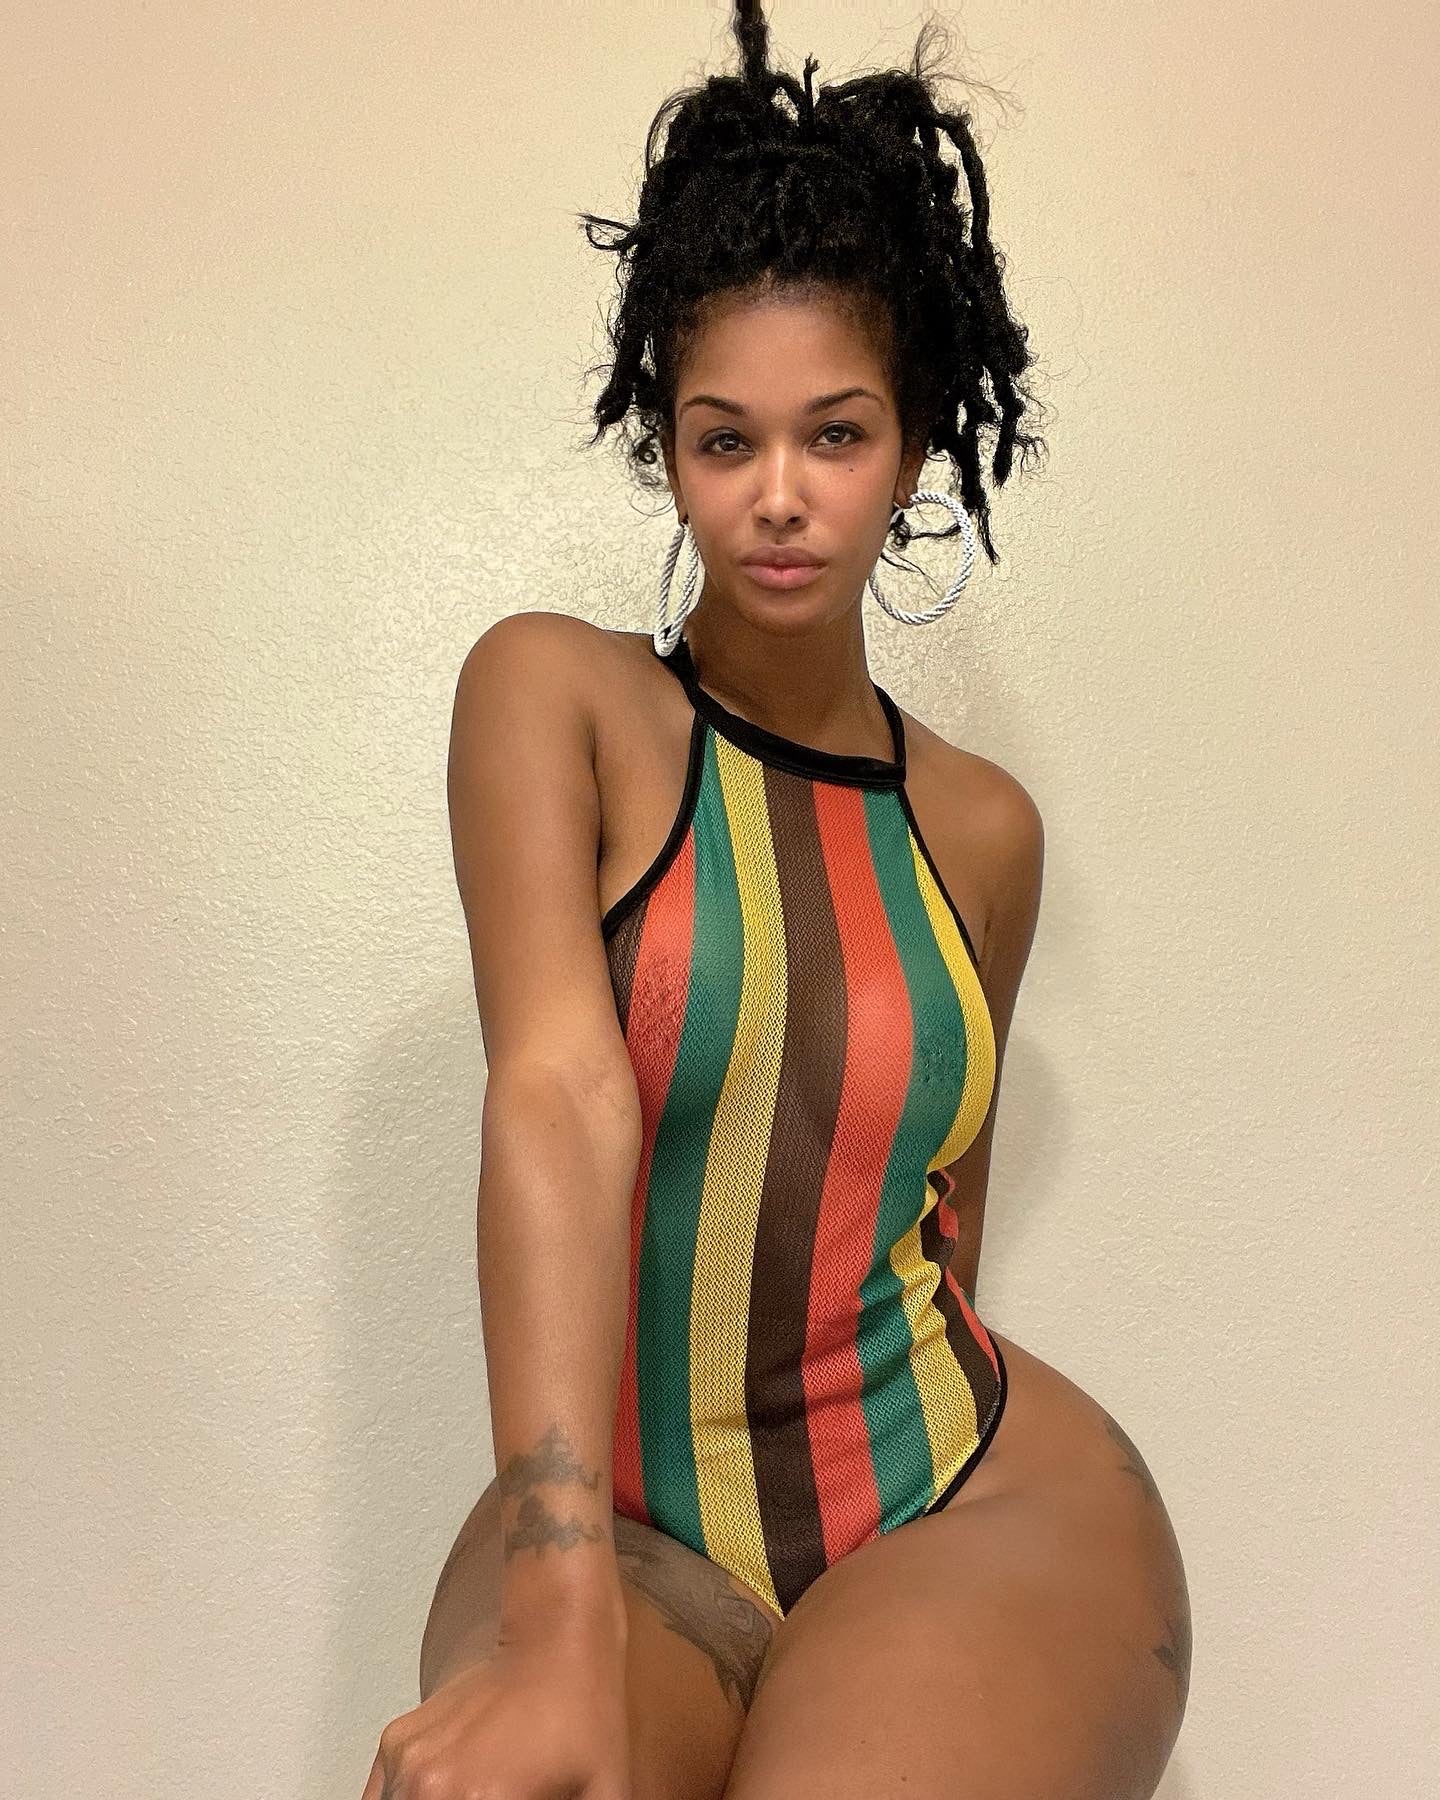 Caribbean girl mesh swimsuit